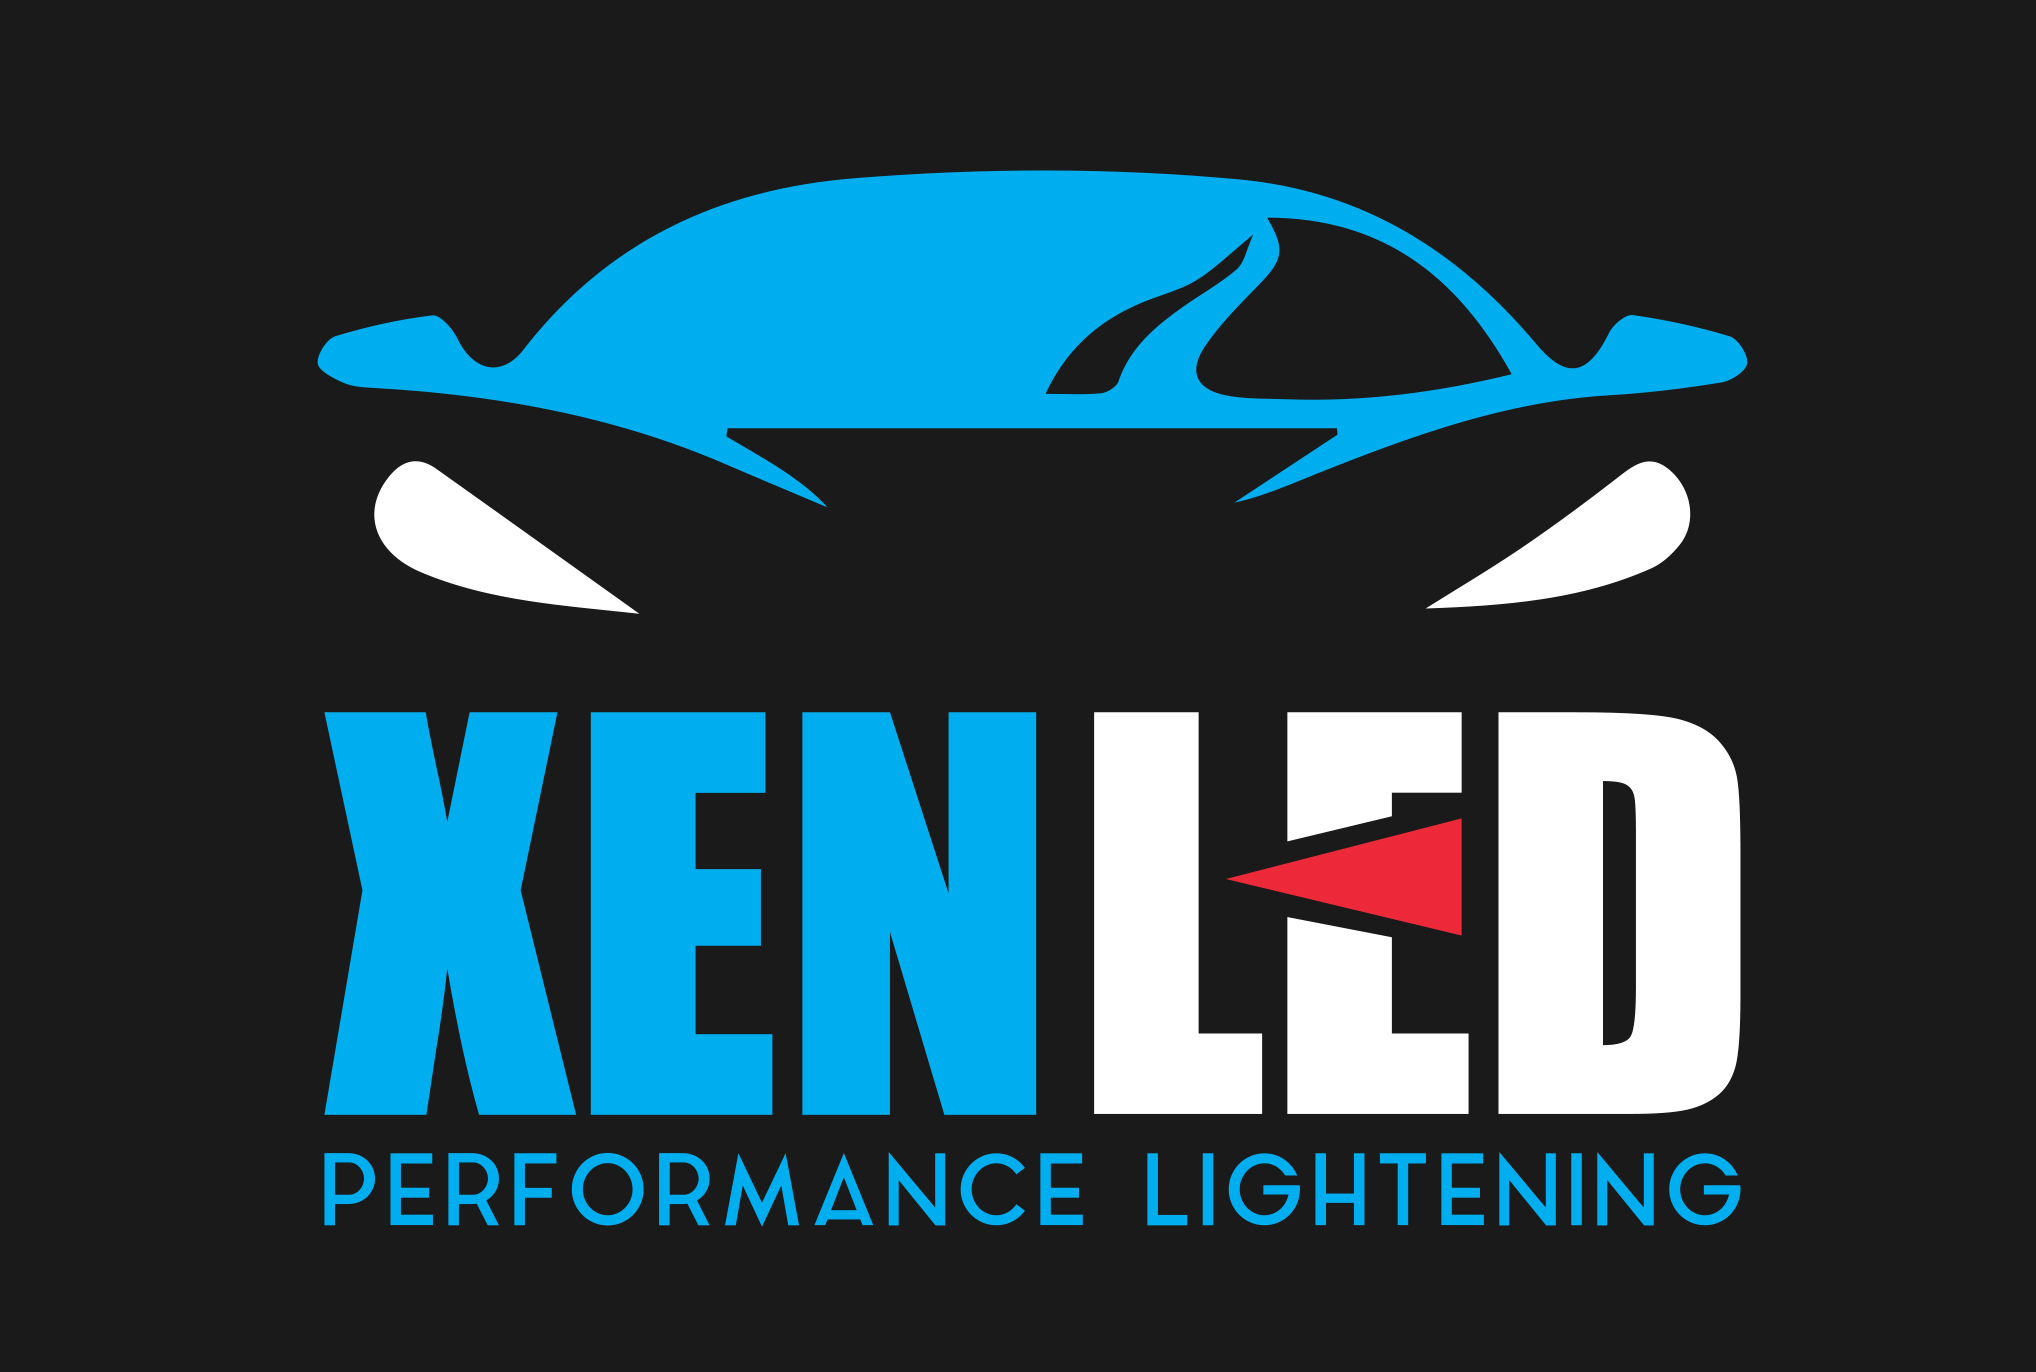 Kit LED XenLed